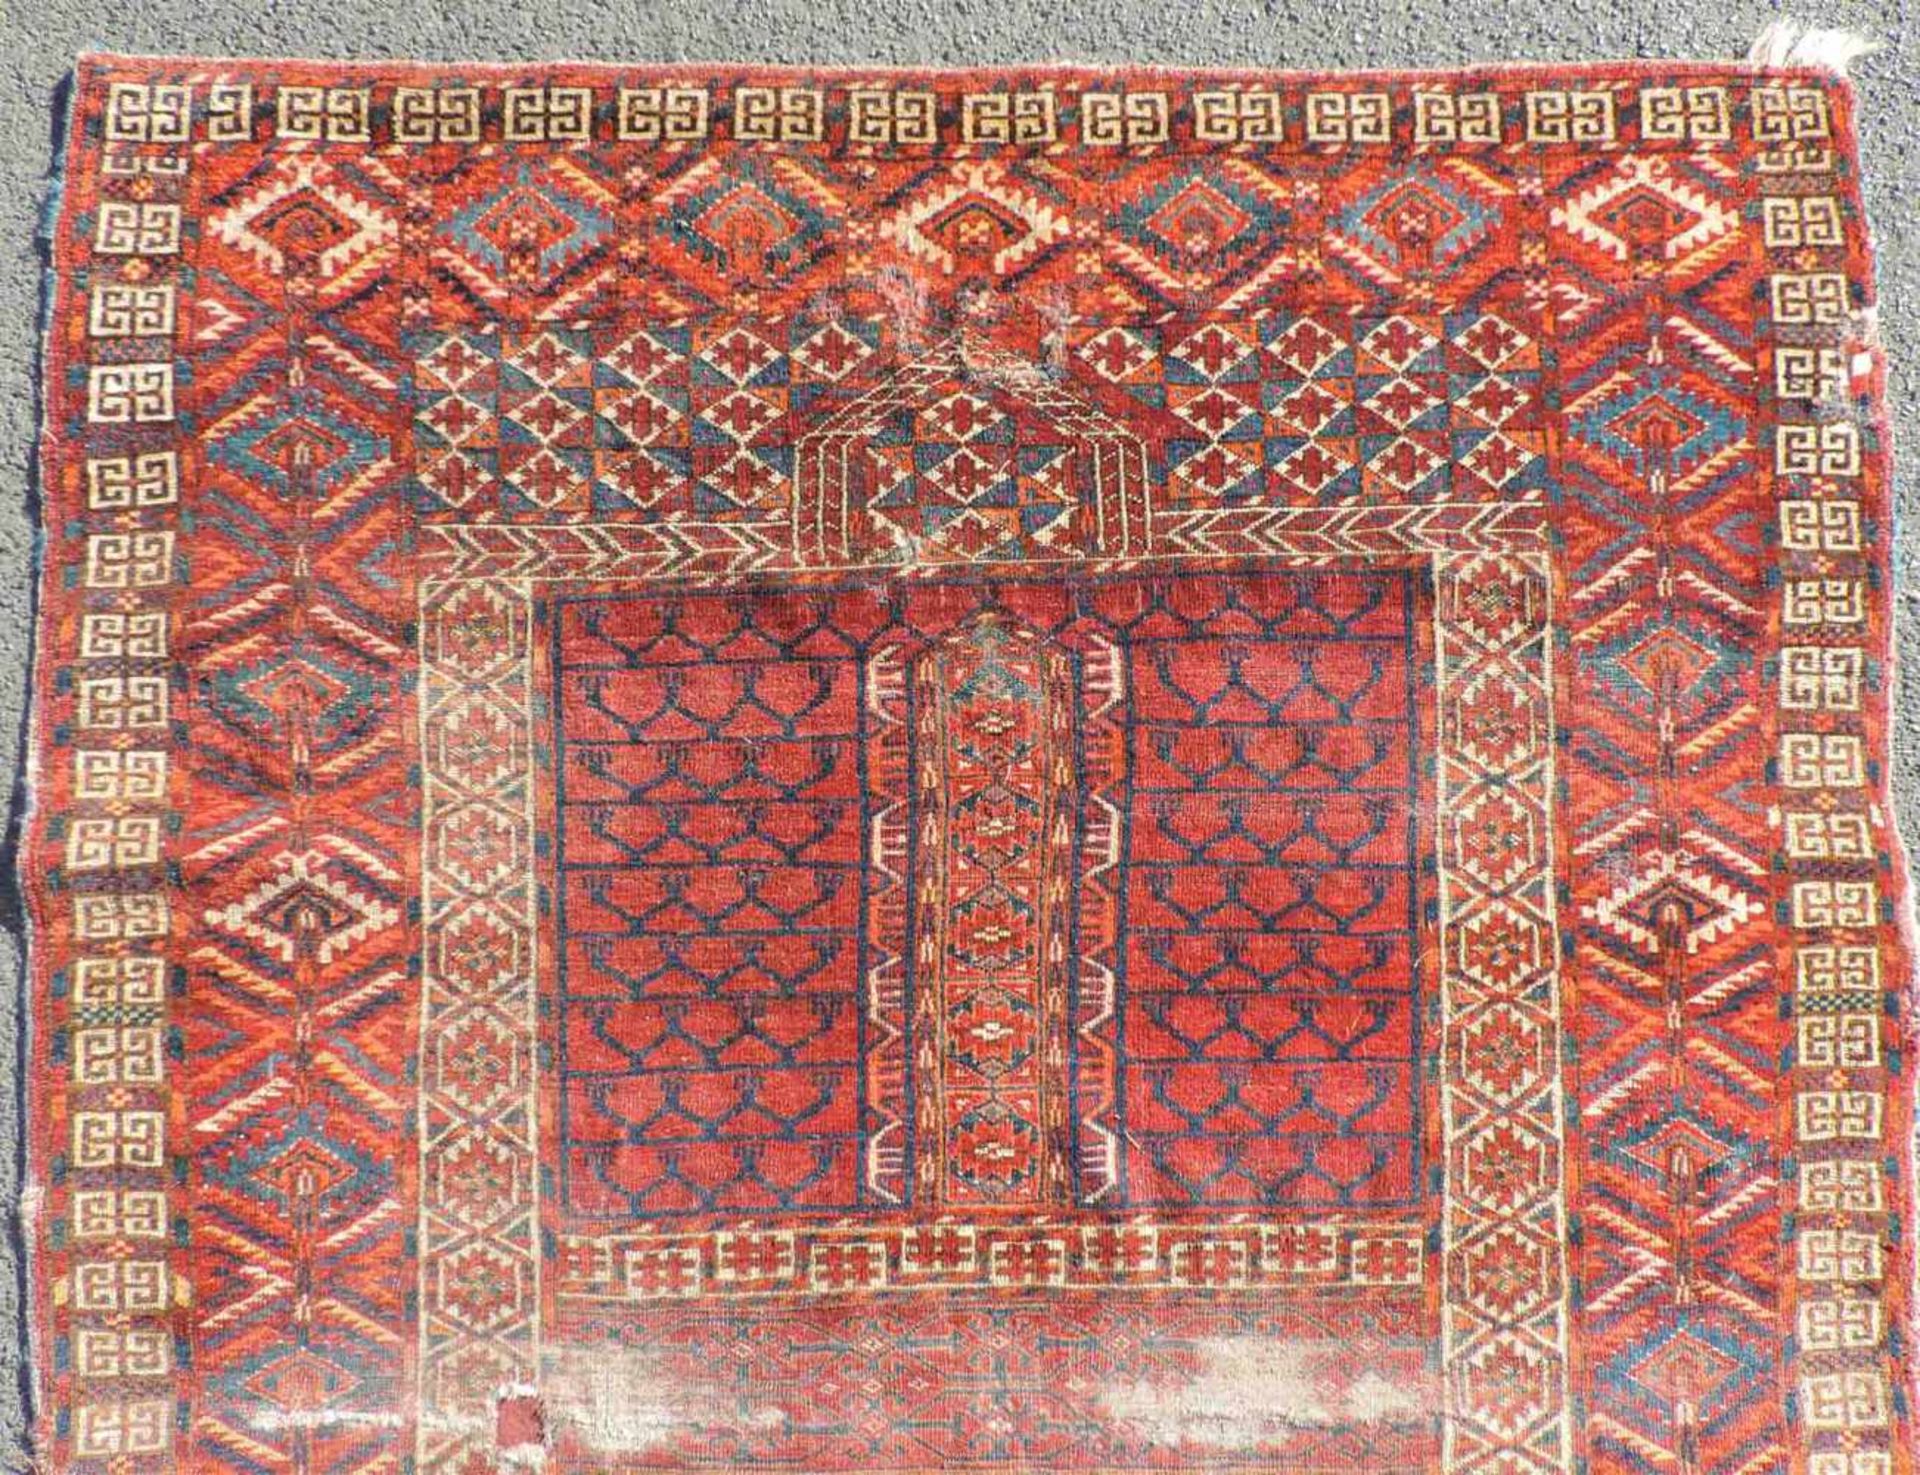 Tekke Ensi Stammesteppich. Turkmenistan. Antik, Mitte 19. Jahrhundert.167 cm x 118 cm. Handgeknüpft. - Bild 3 aus 6